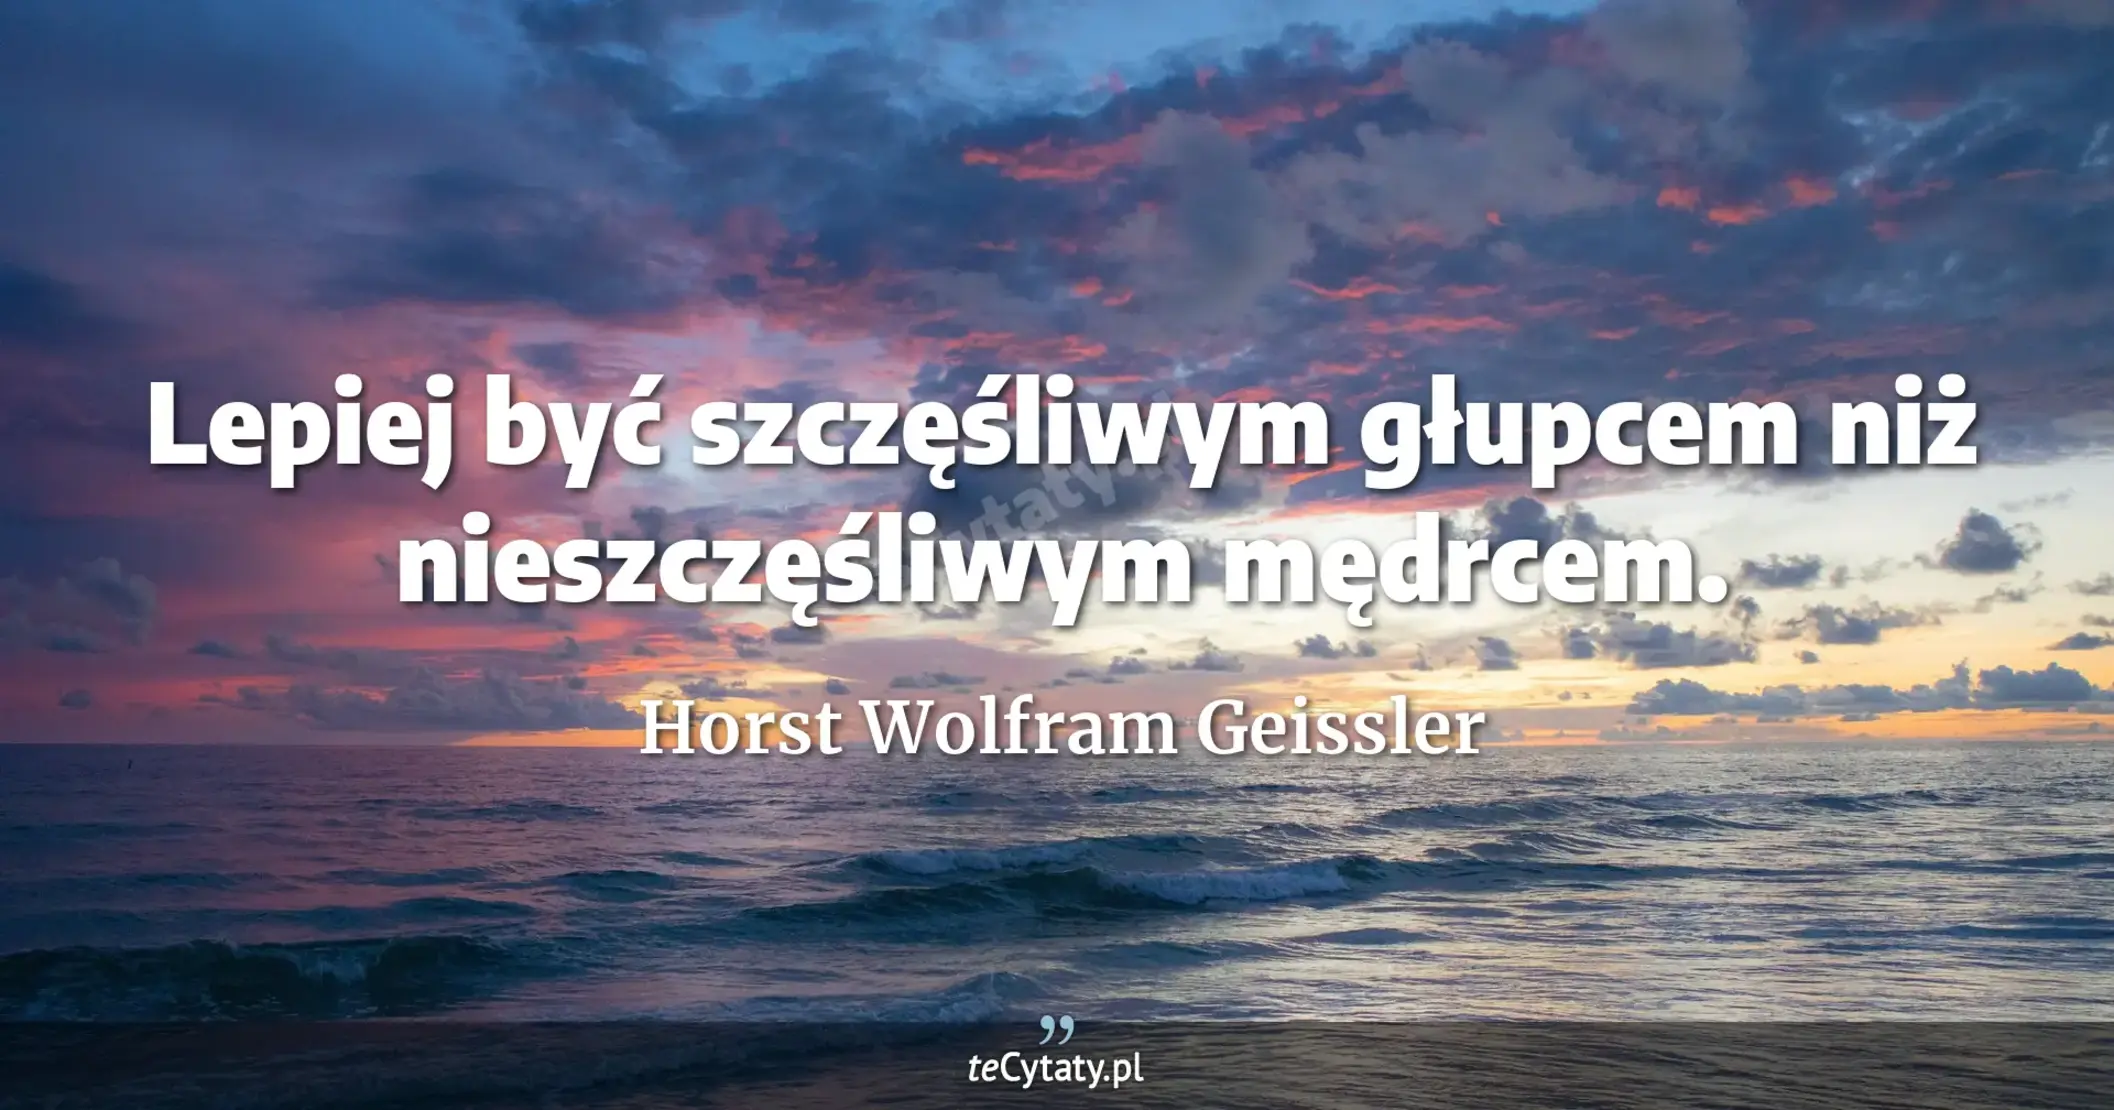 Lepiej być szczęśliwym głupcem niż nieszczęśliwym mędrcem. - Horst Wolfram Geissler